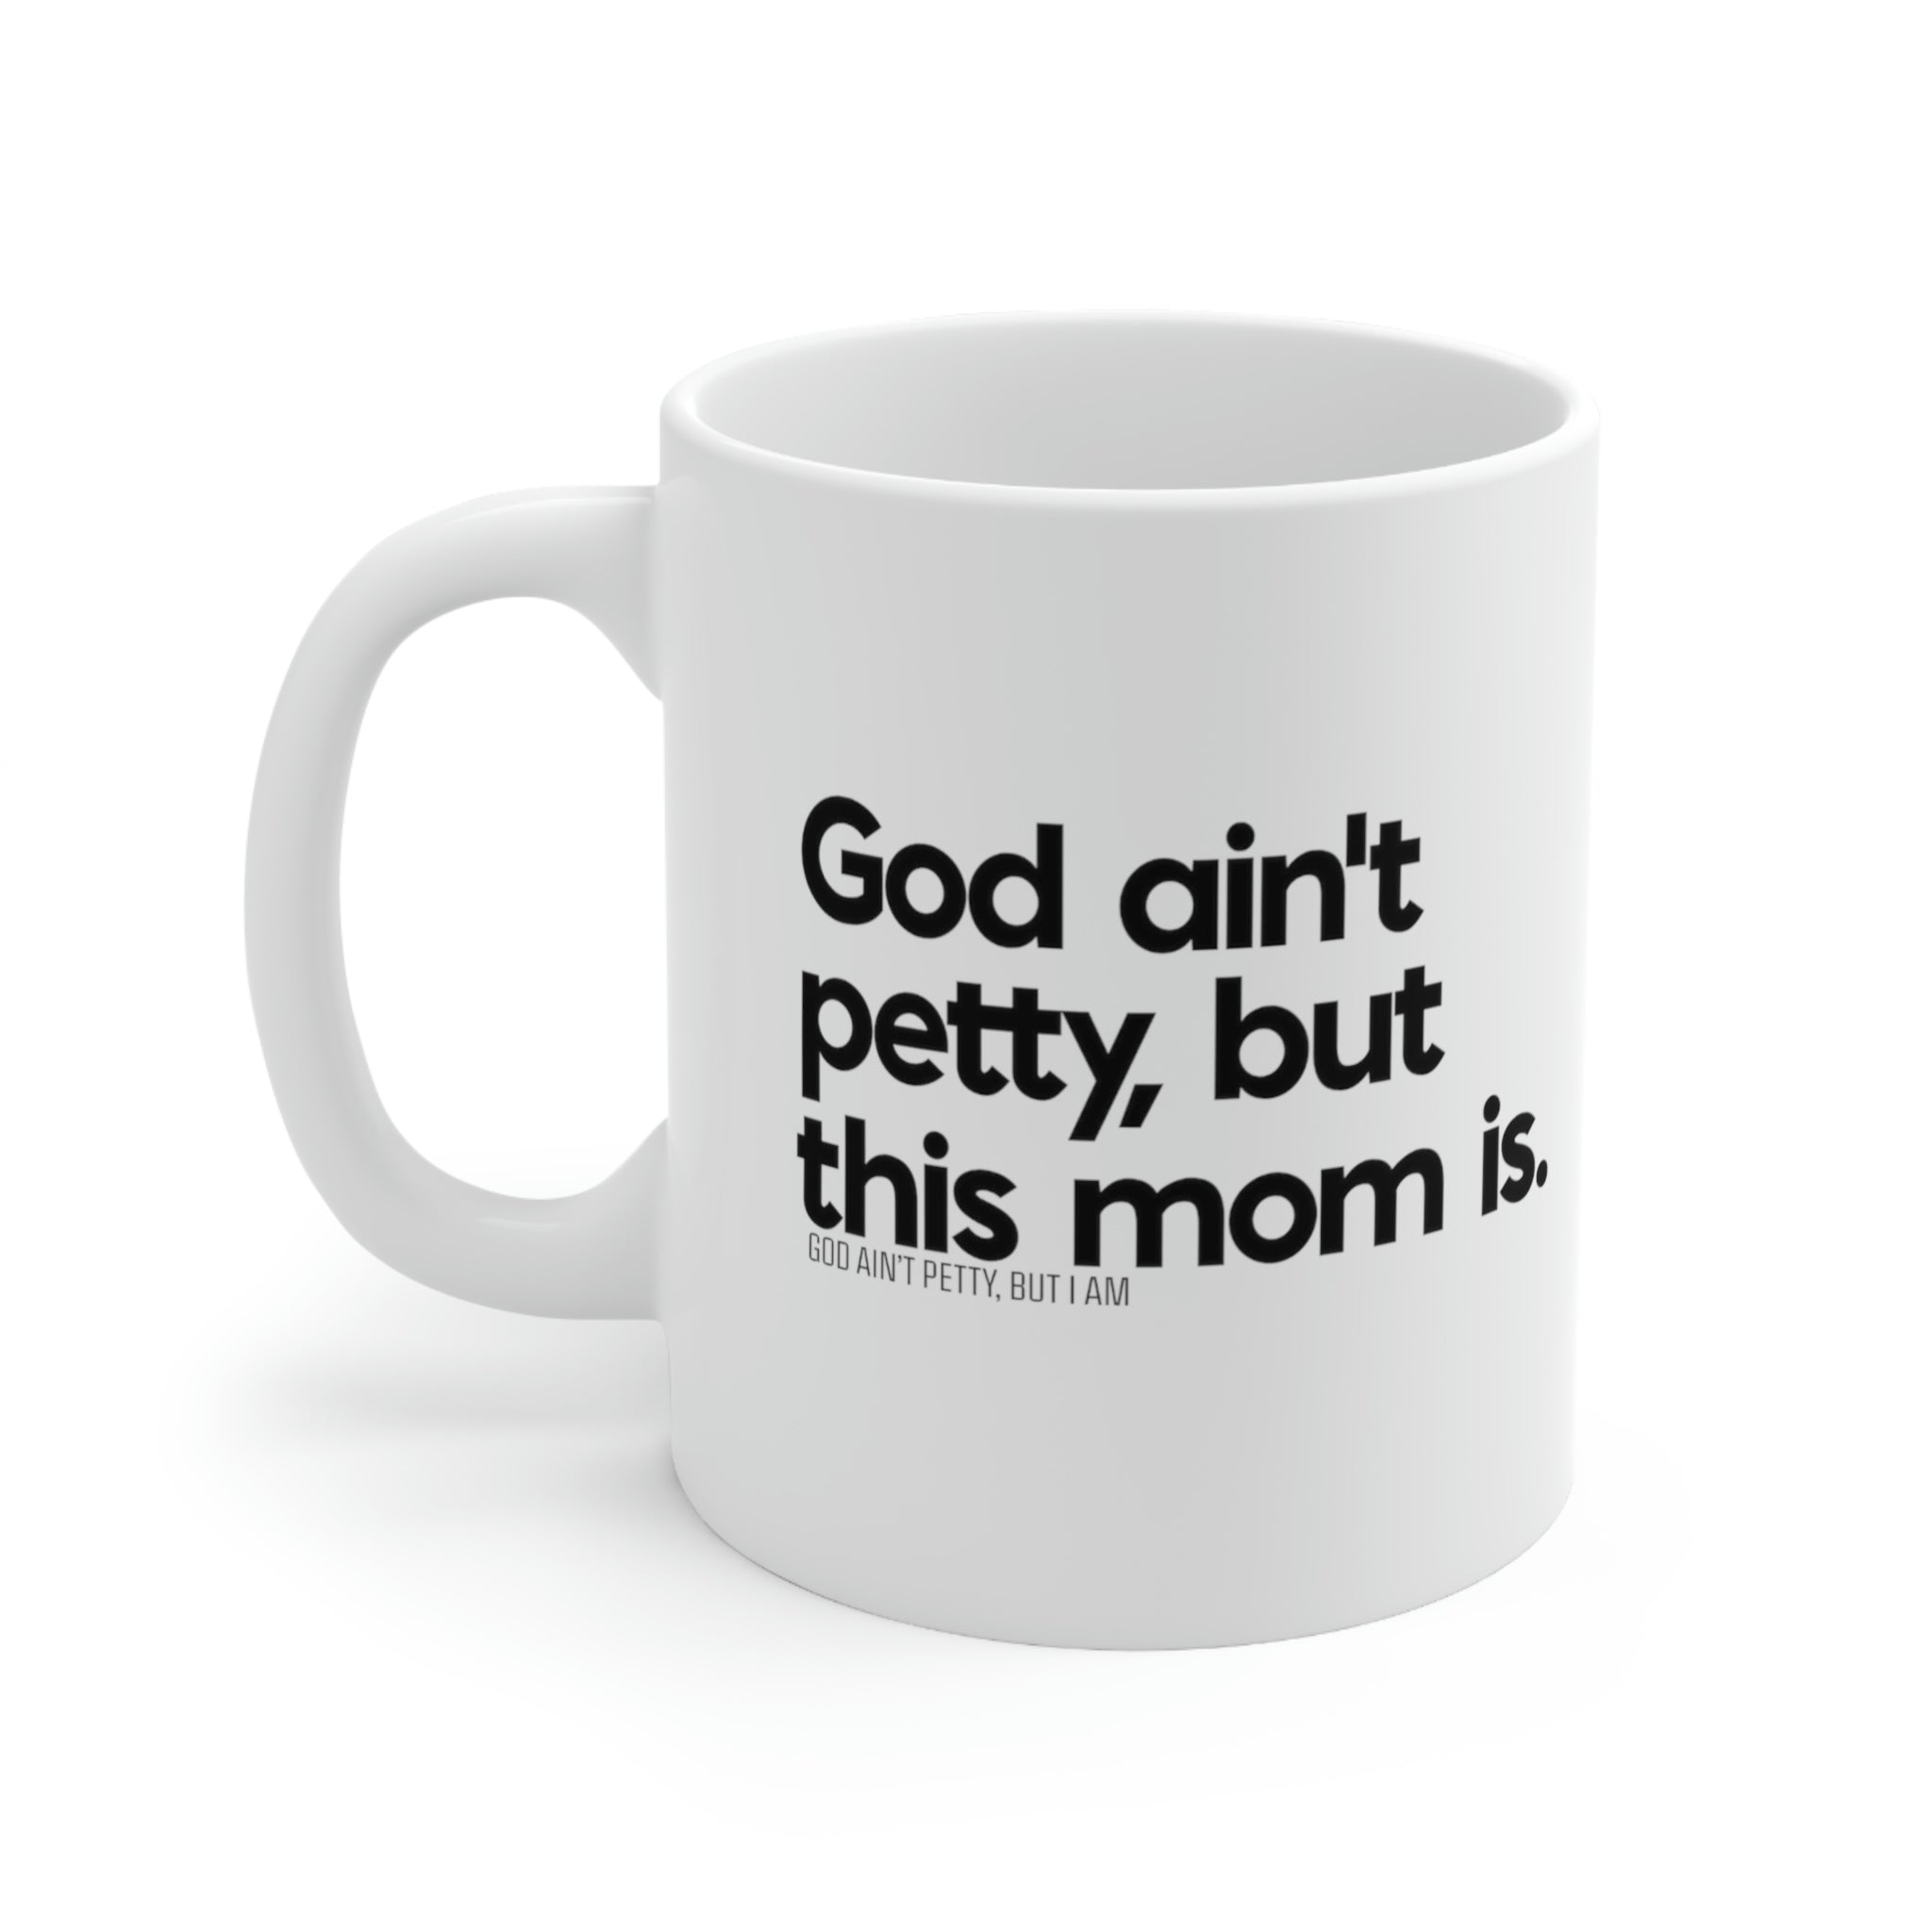 God ain't petty but this mom is Mug 11oz (White/Black)-Mug-The Original God Ain't Petty But I Am